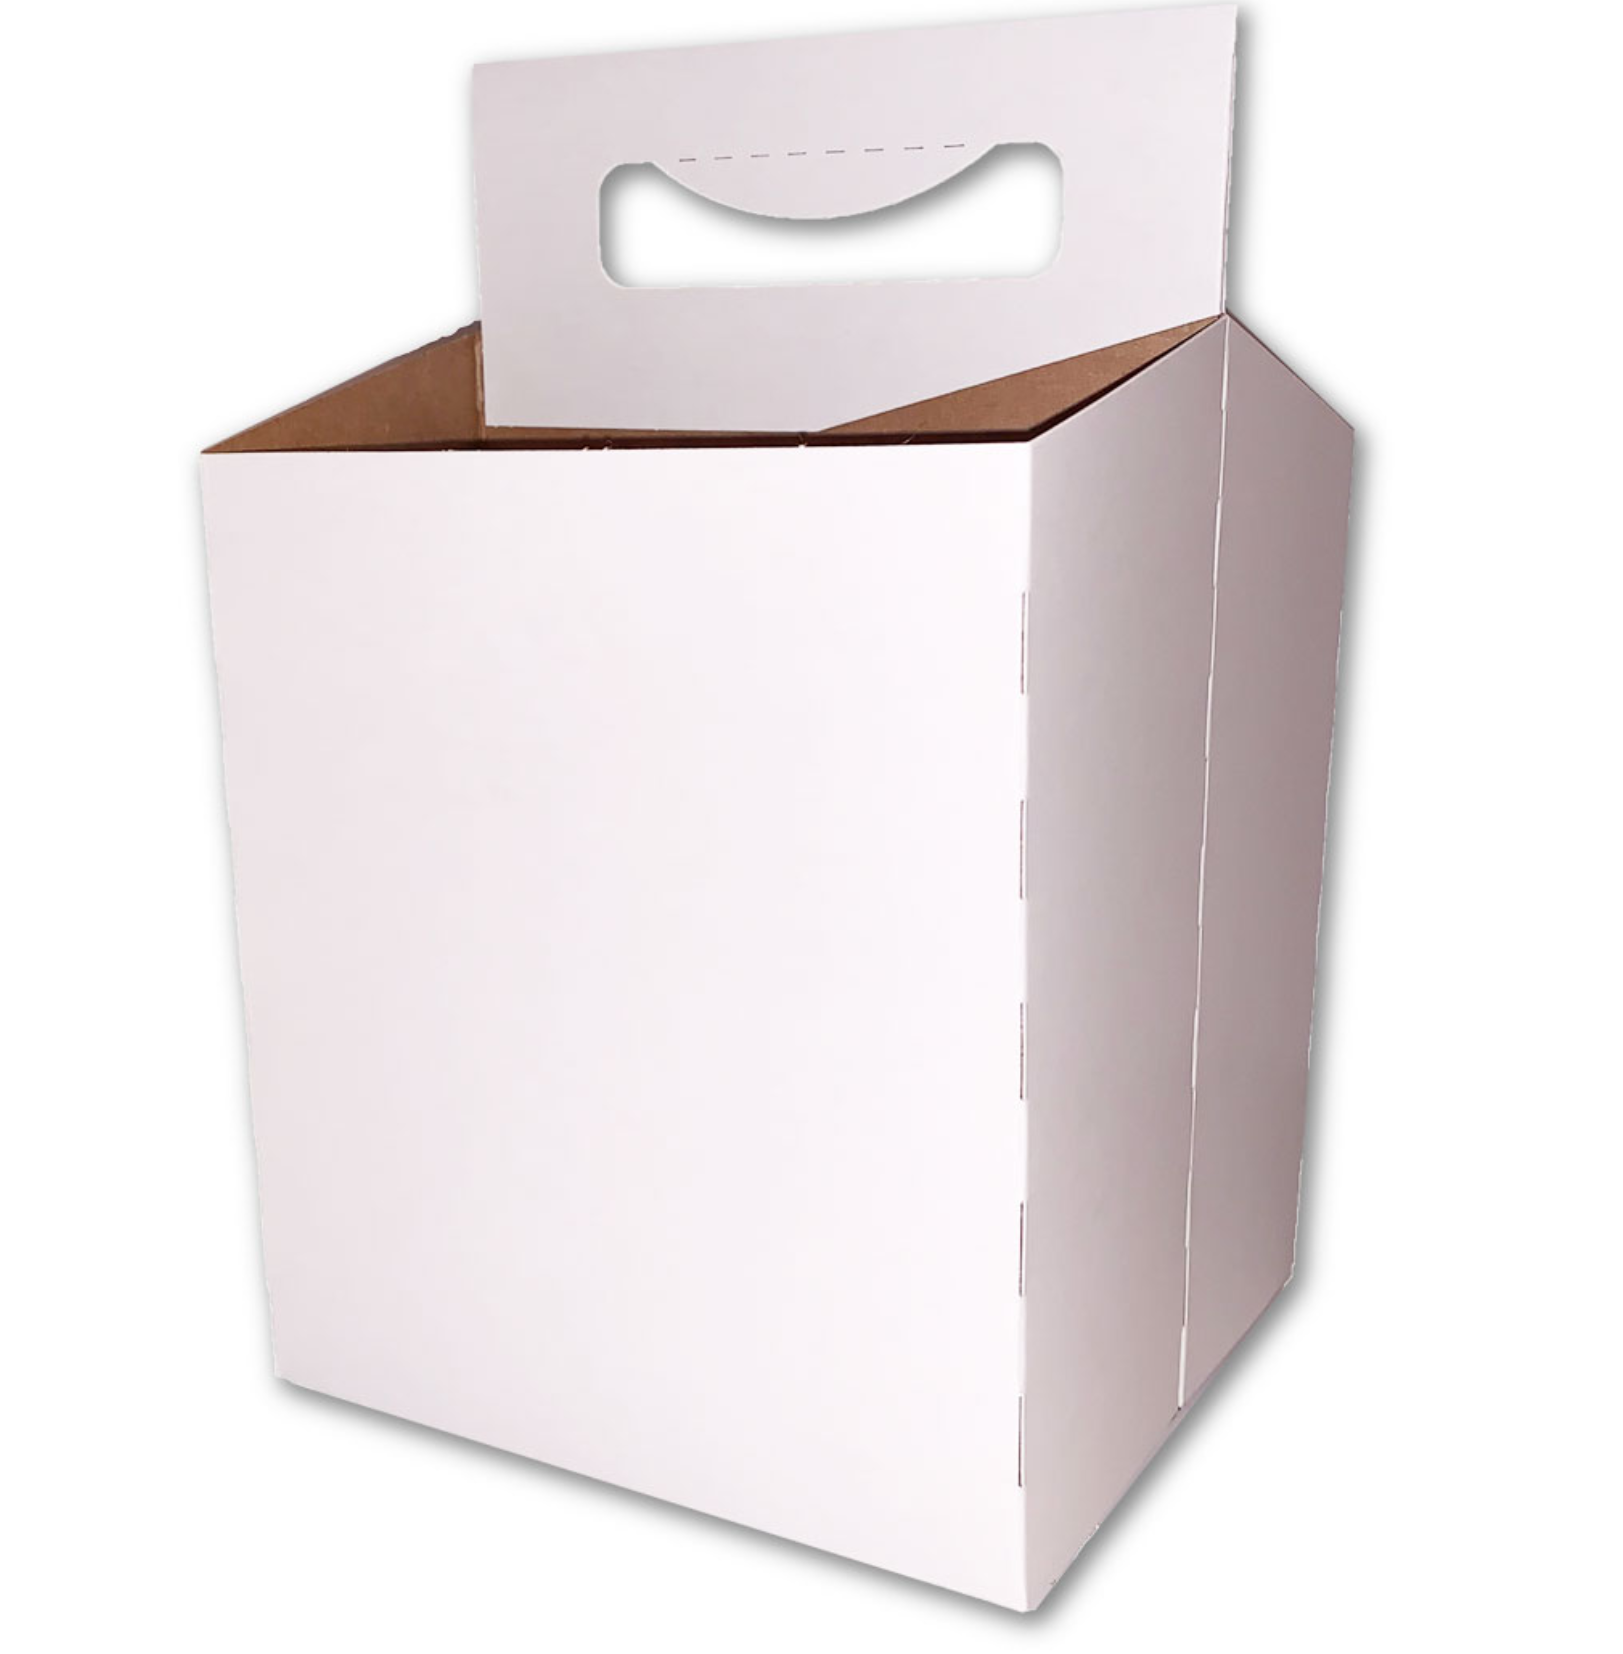 Cardboard Carrier, White 12 oz Bottle Carrier